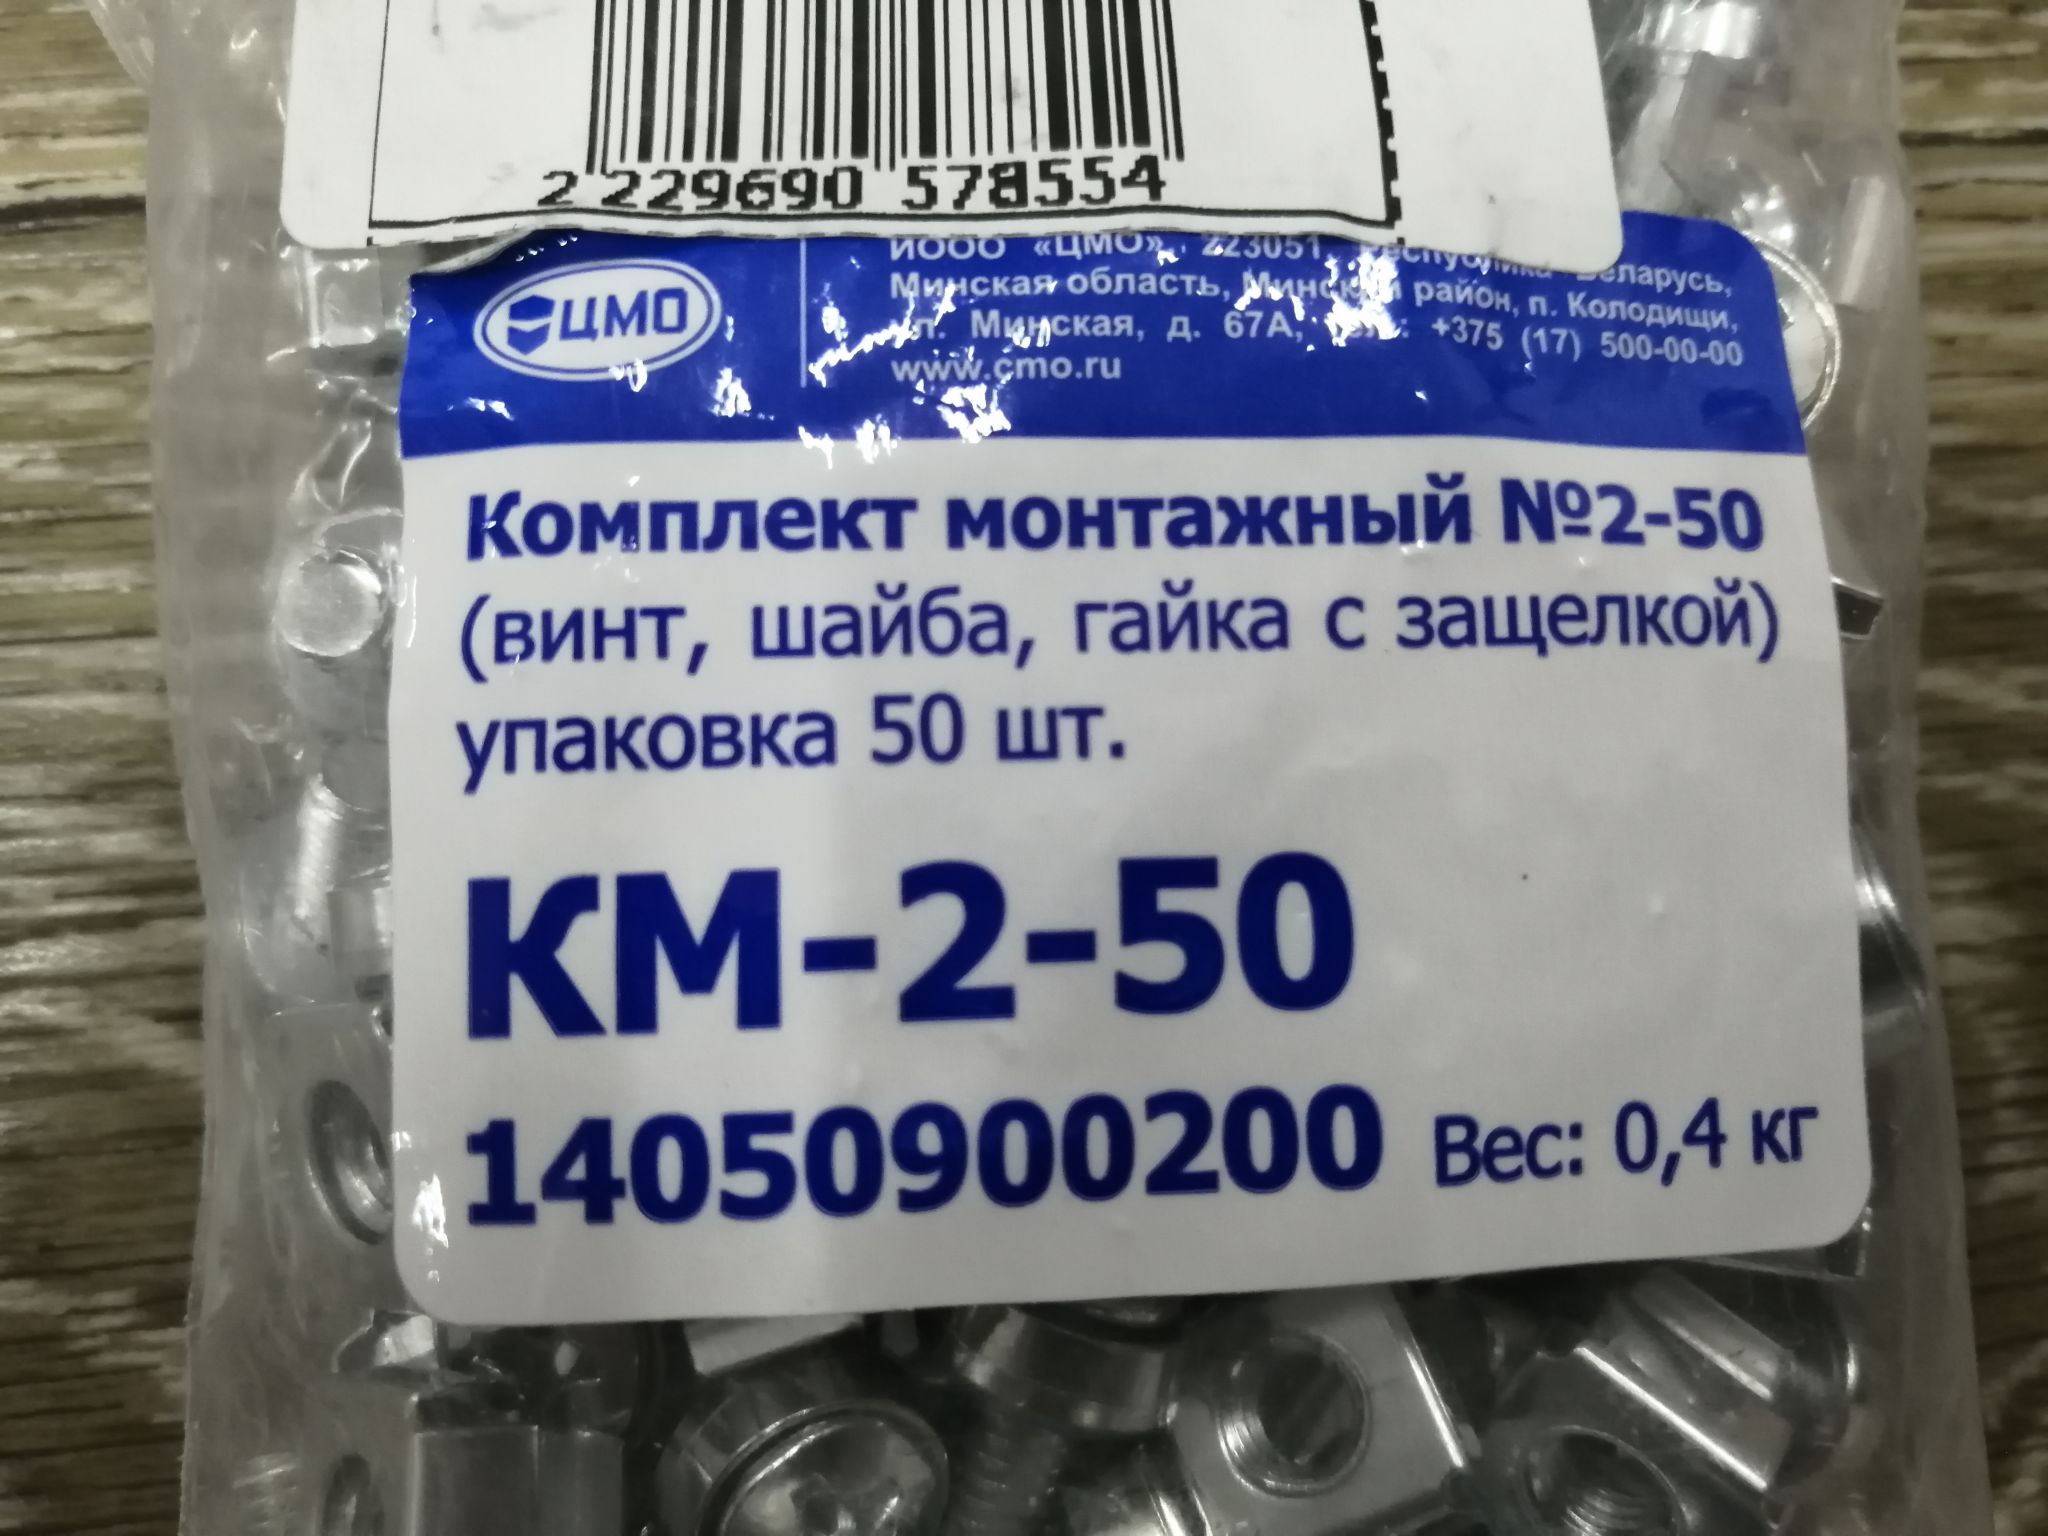 Км-2-50 комплект монтажный 2